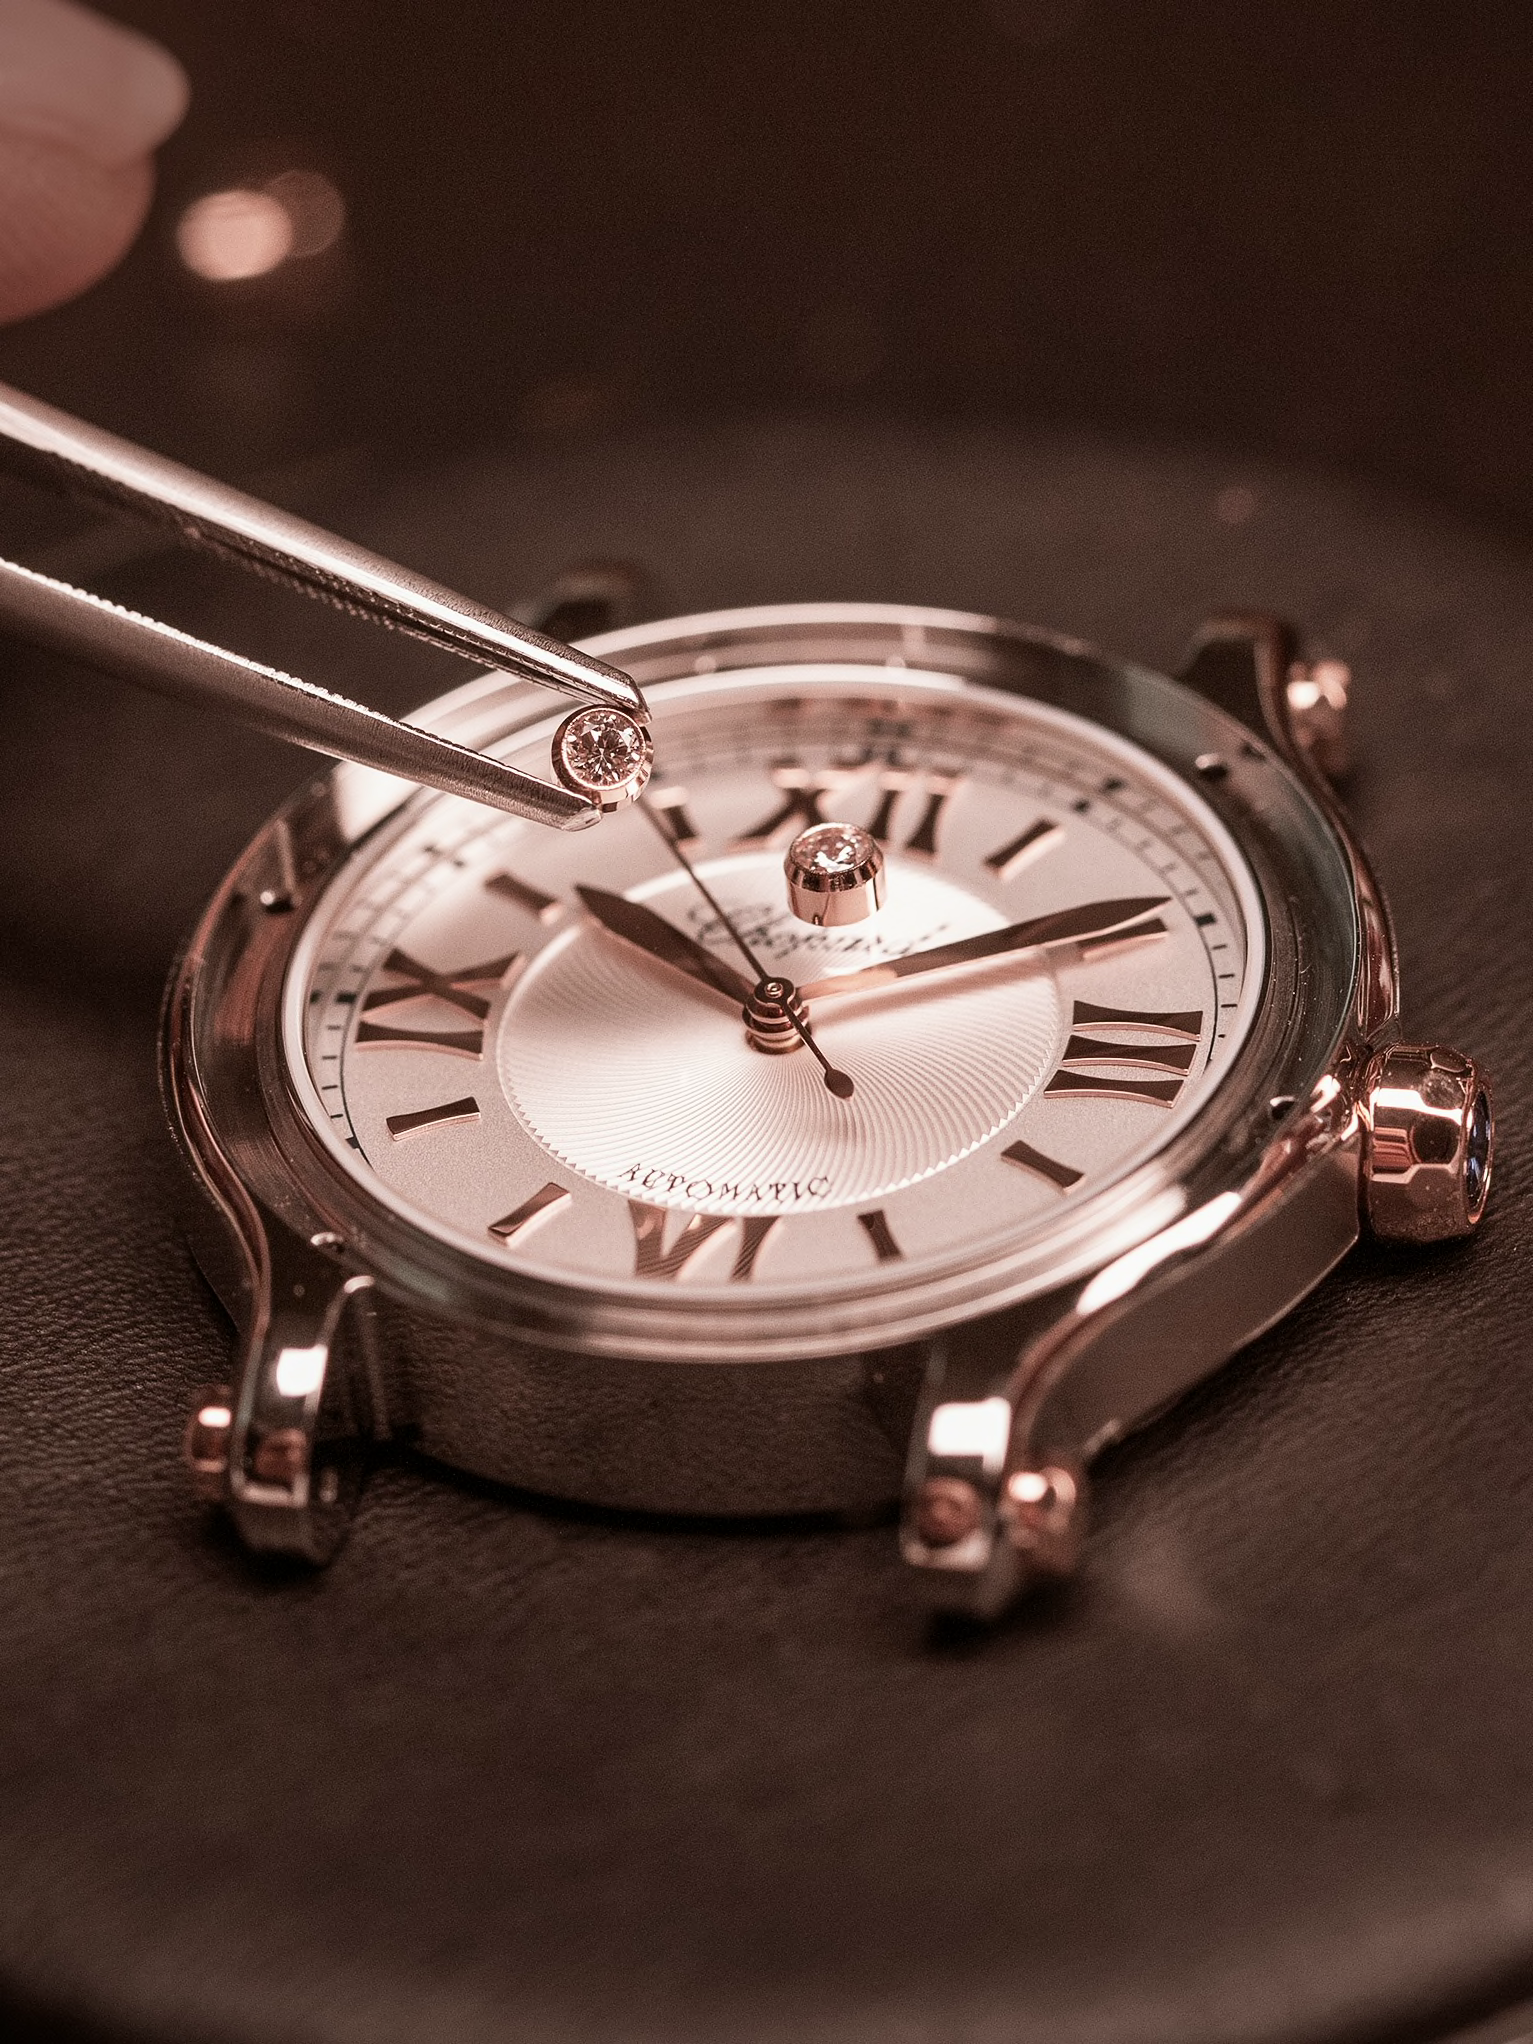 Réparation d'une montre suisse Chopard dans le cadre de l'extension de garantie